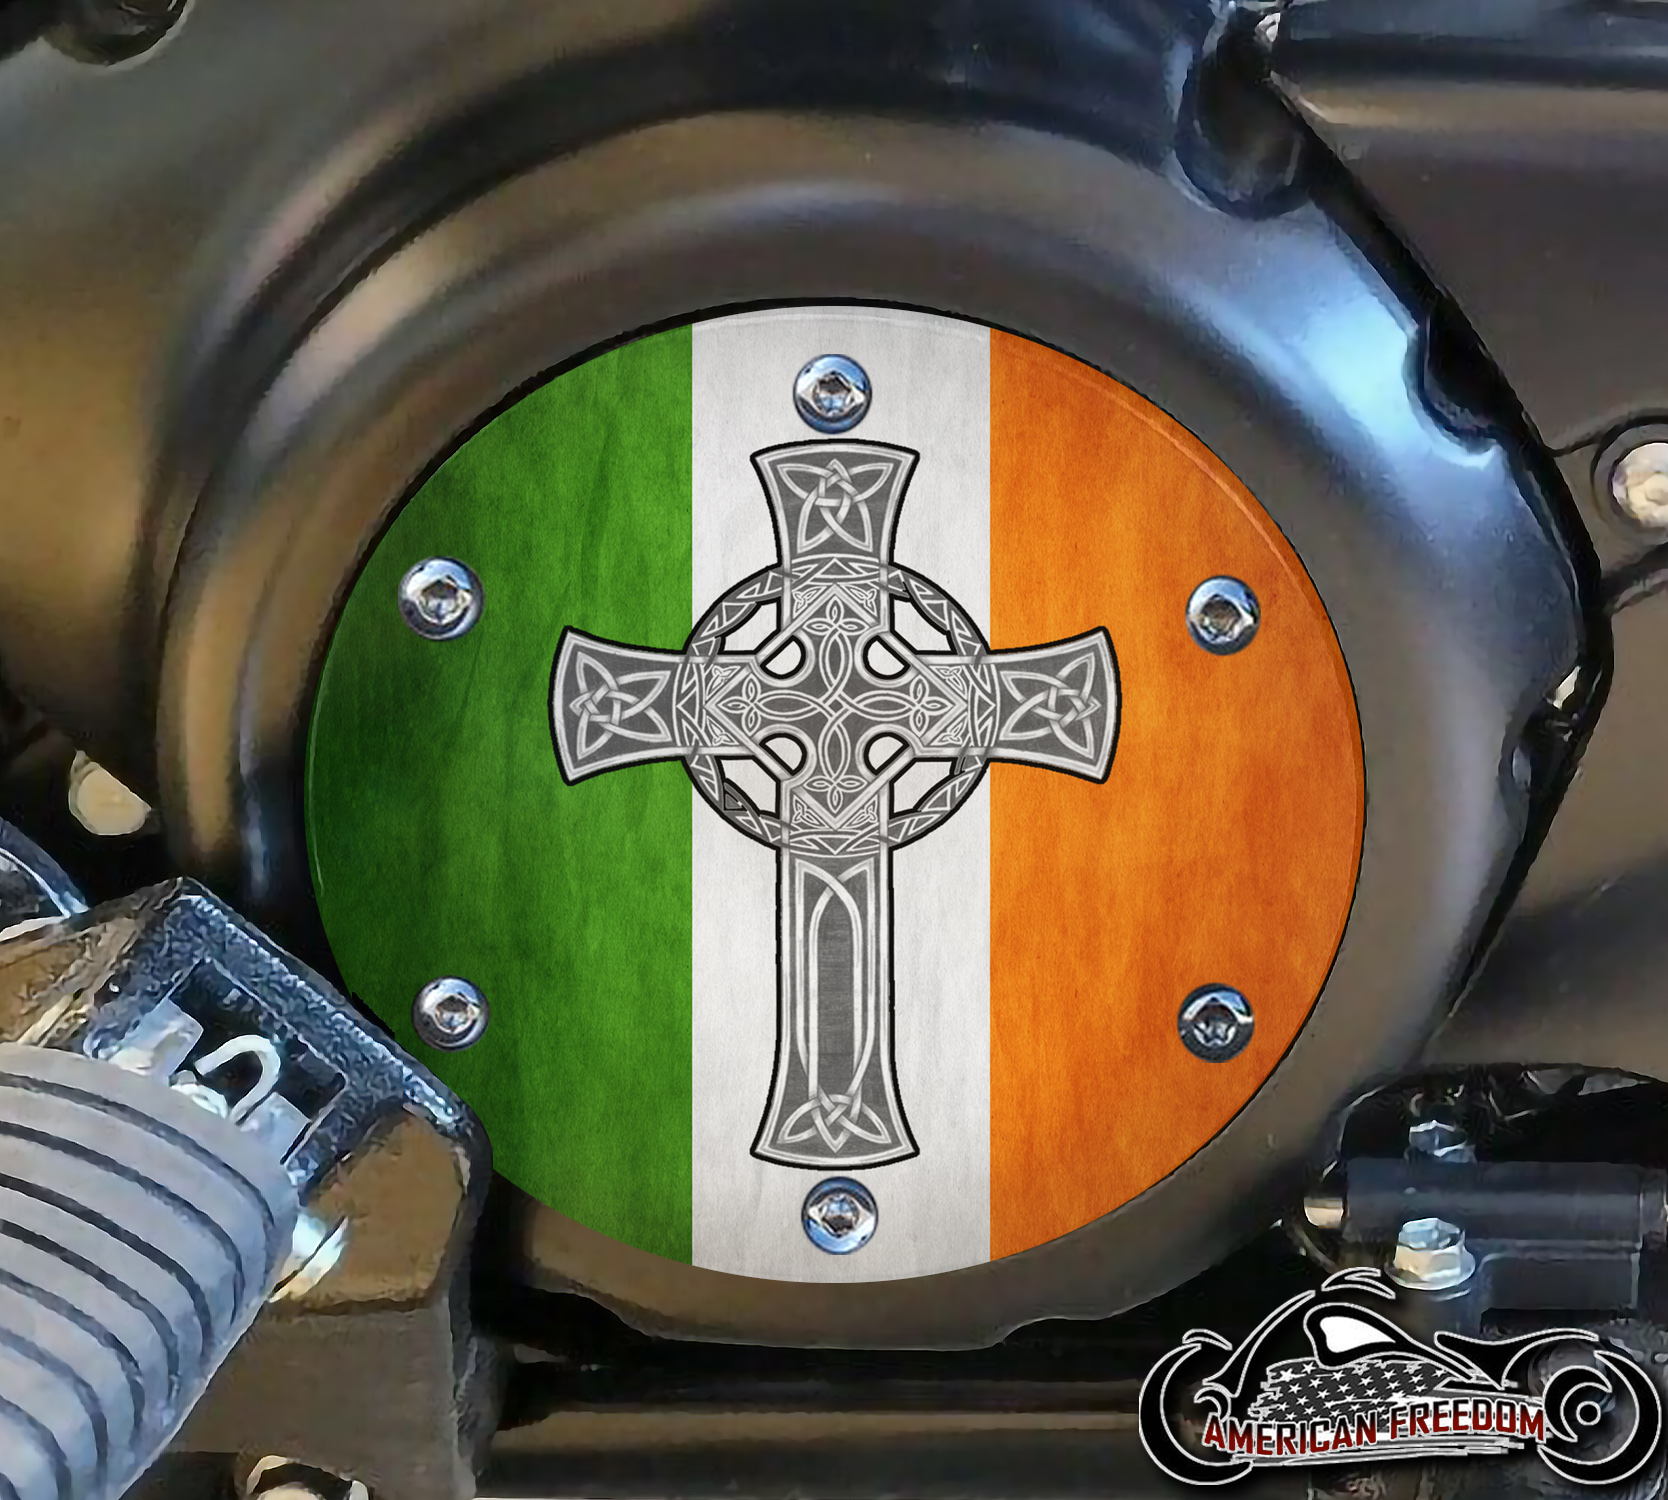 SUZUKI M109R Derby/Engine Cover - Irish Cross